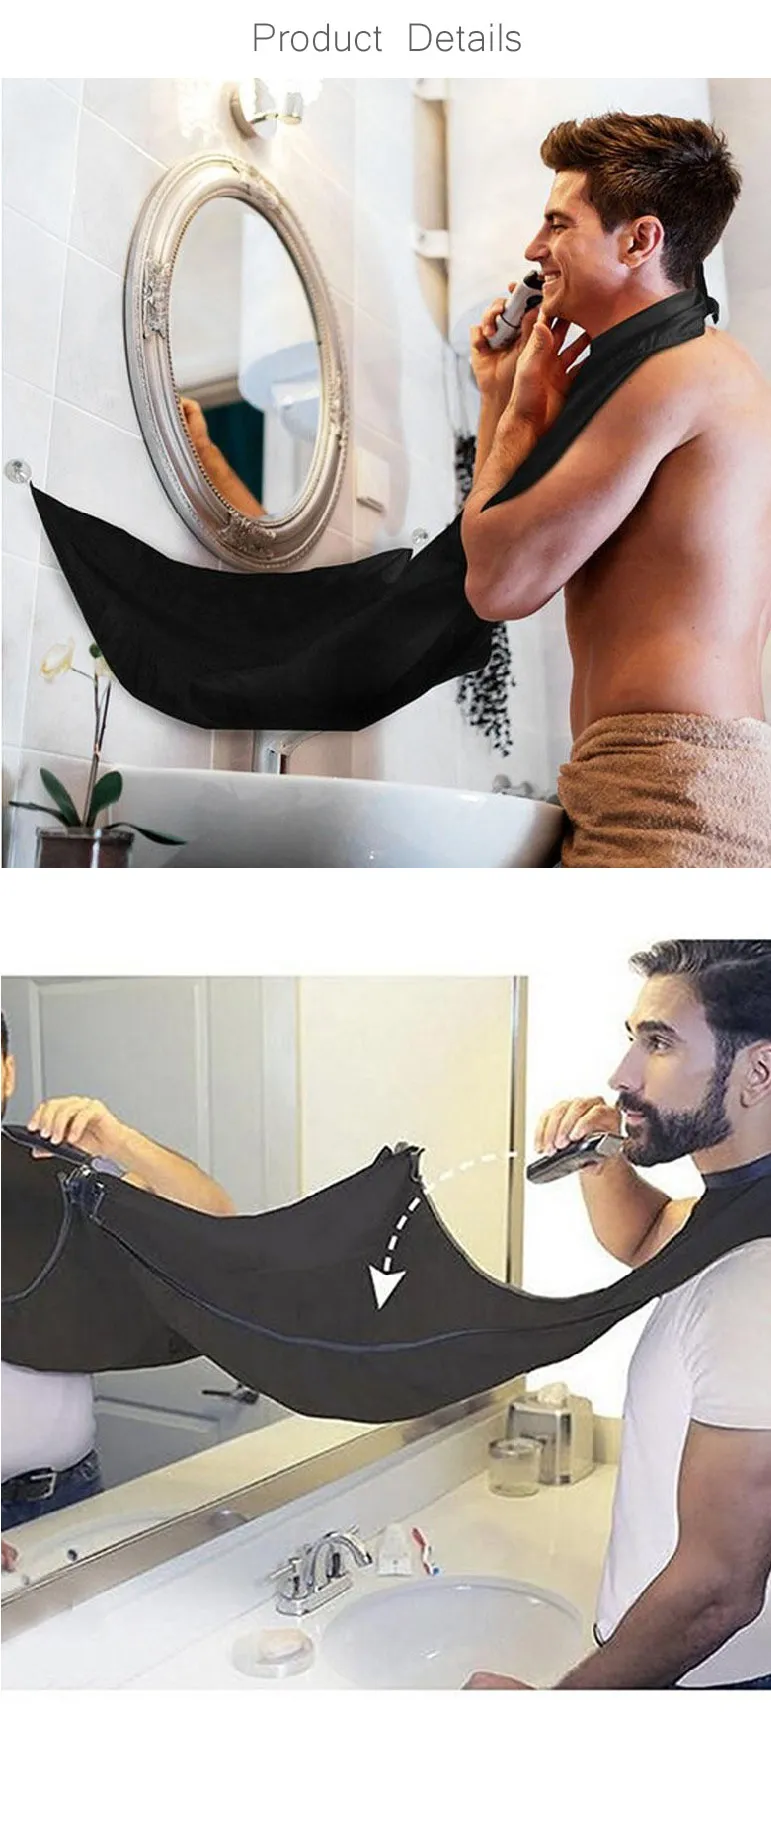 Espelho De Aumento водонепроницаемый борода фартук для сбора ткани нагрудник уход за лицом волос отделка нейлон обрезки Ловец для мужчин ванной комнаты